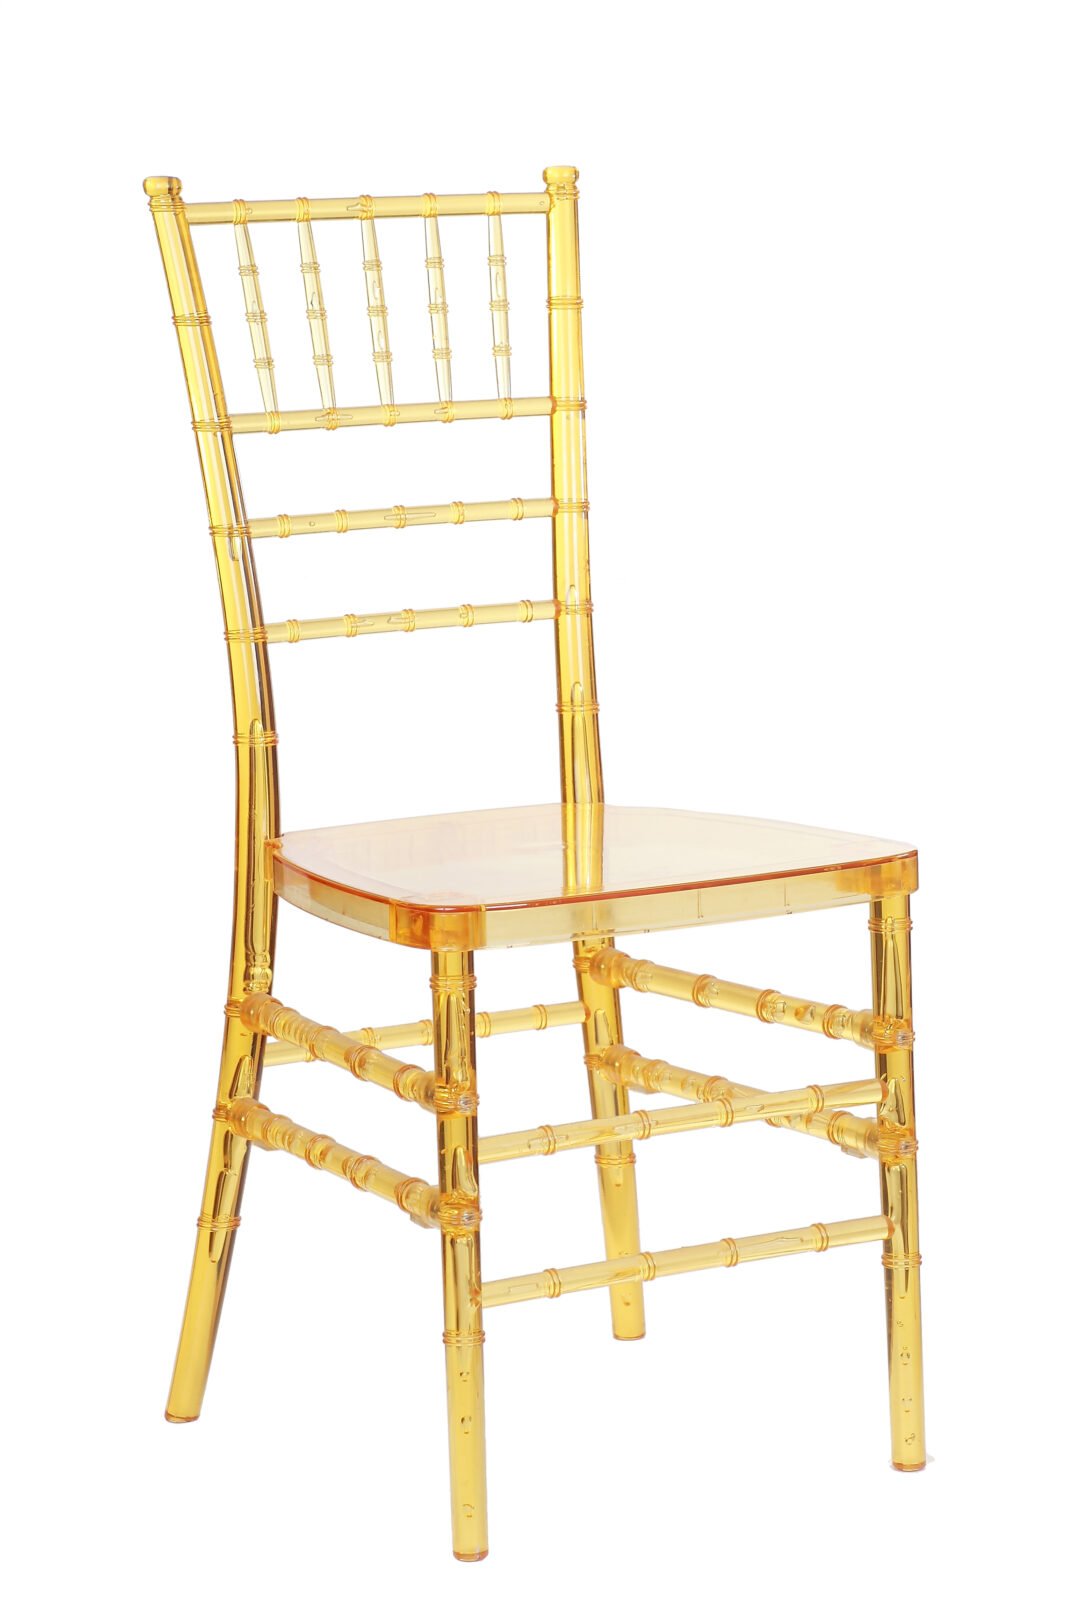 Chiavari Chair - A1 Party Rental